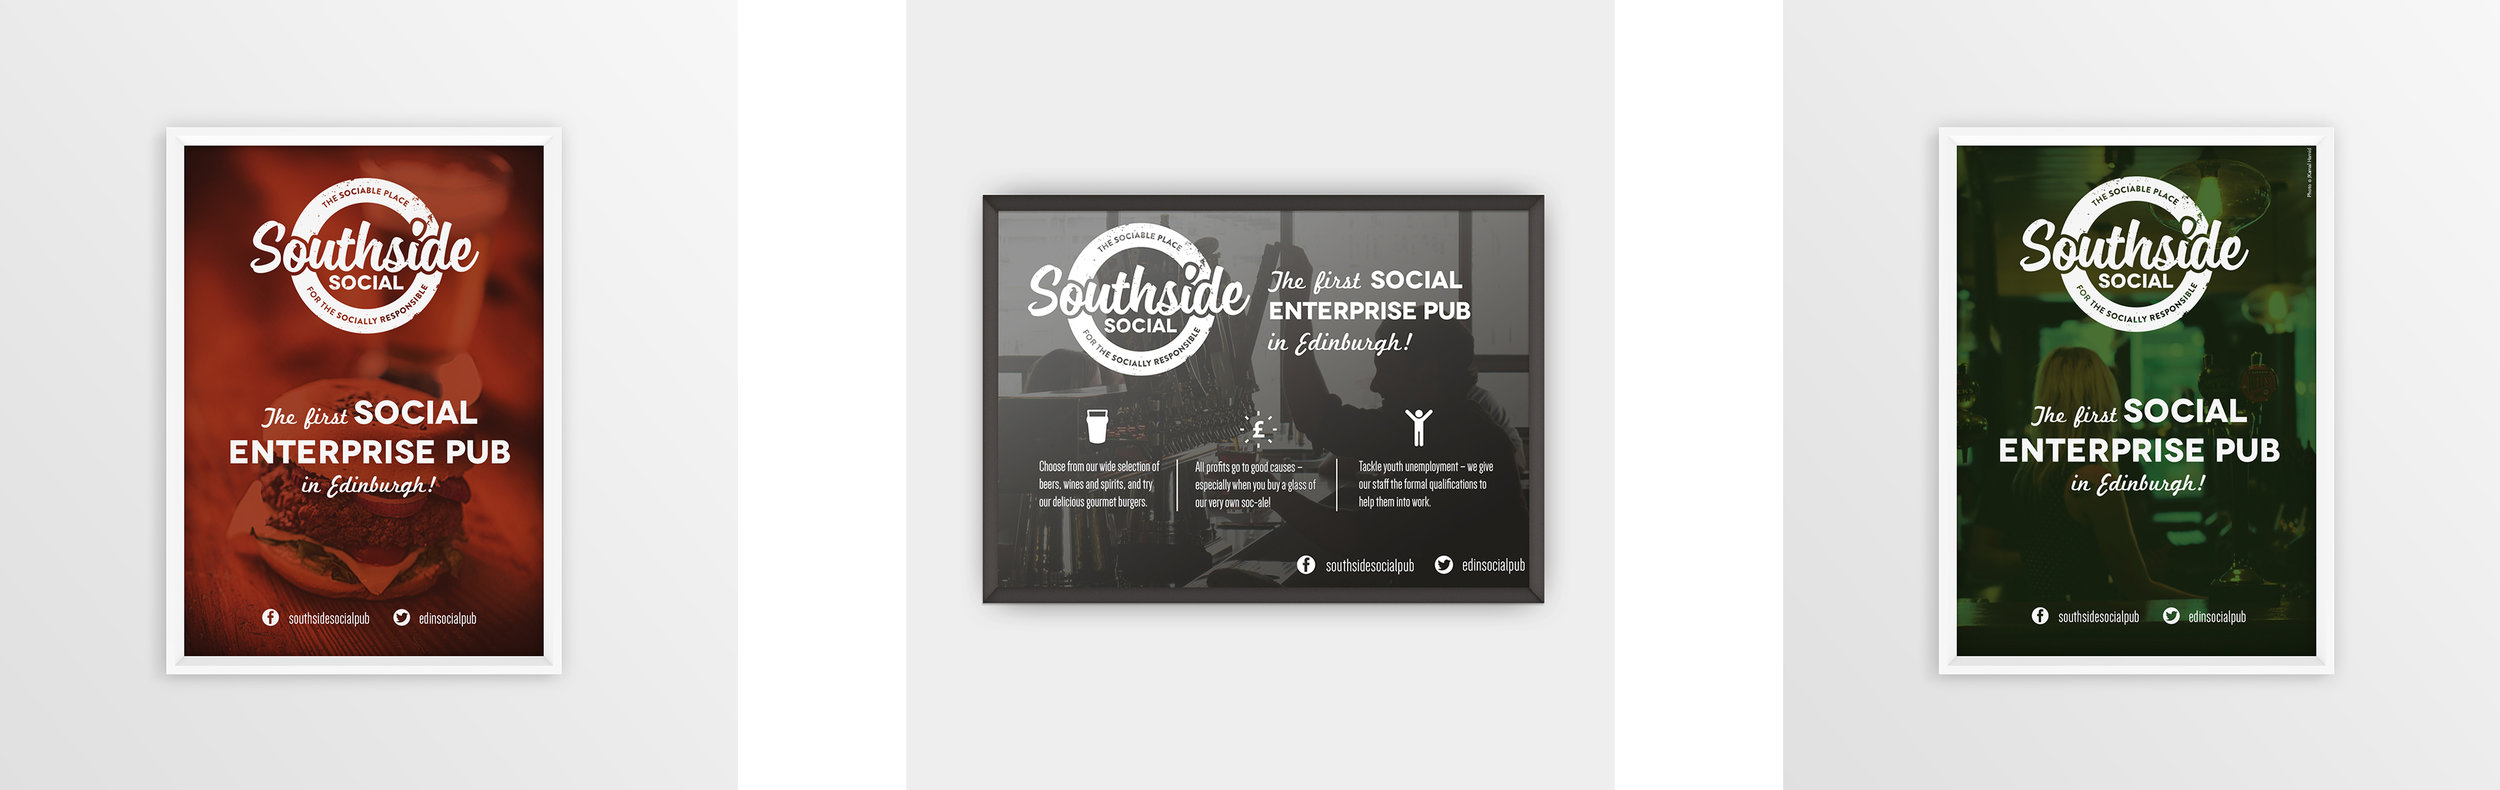 southside-social-branding-double.jpg